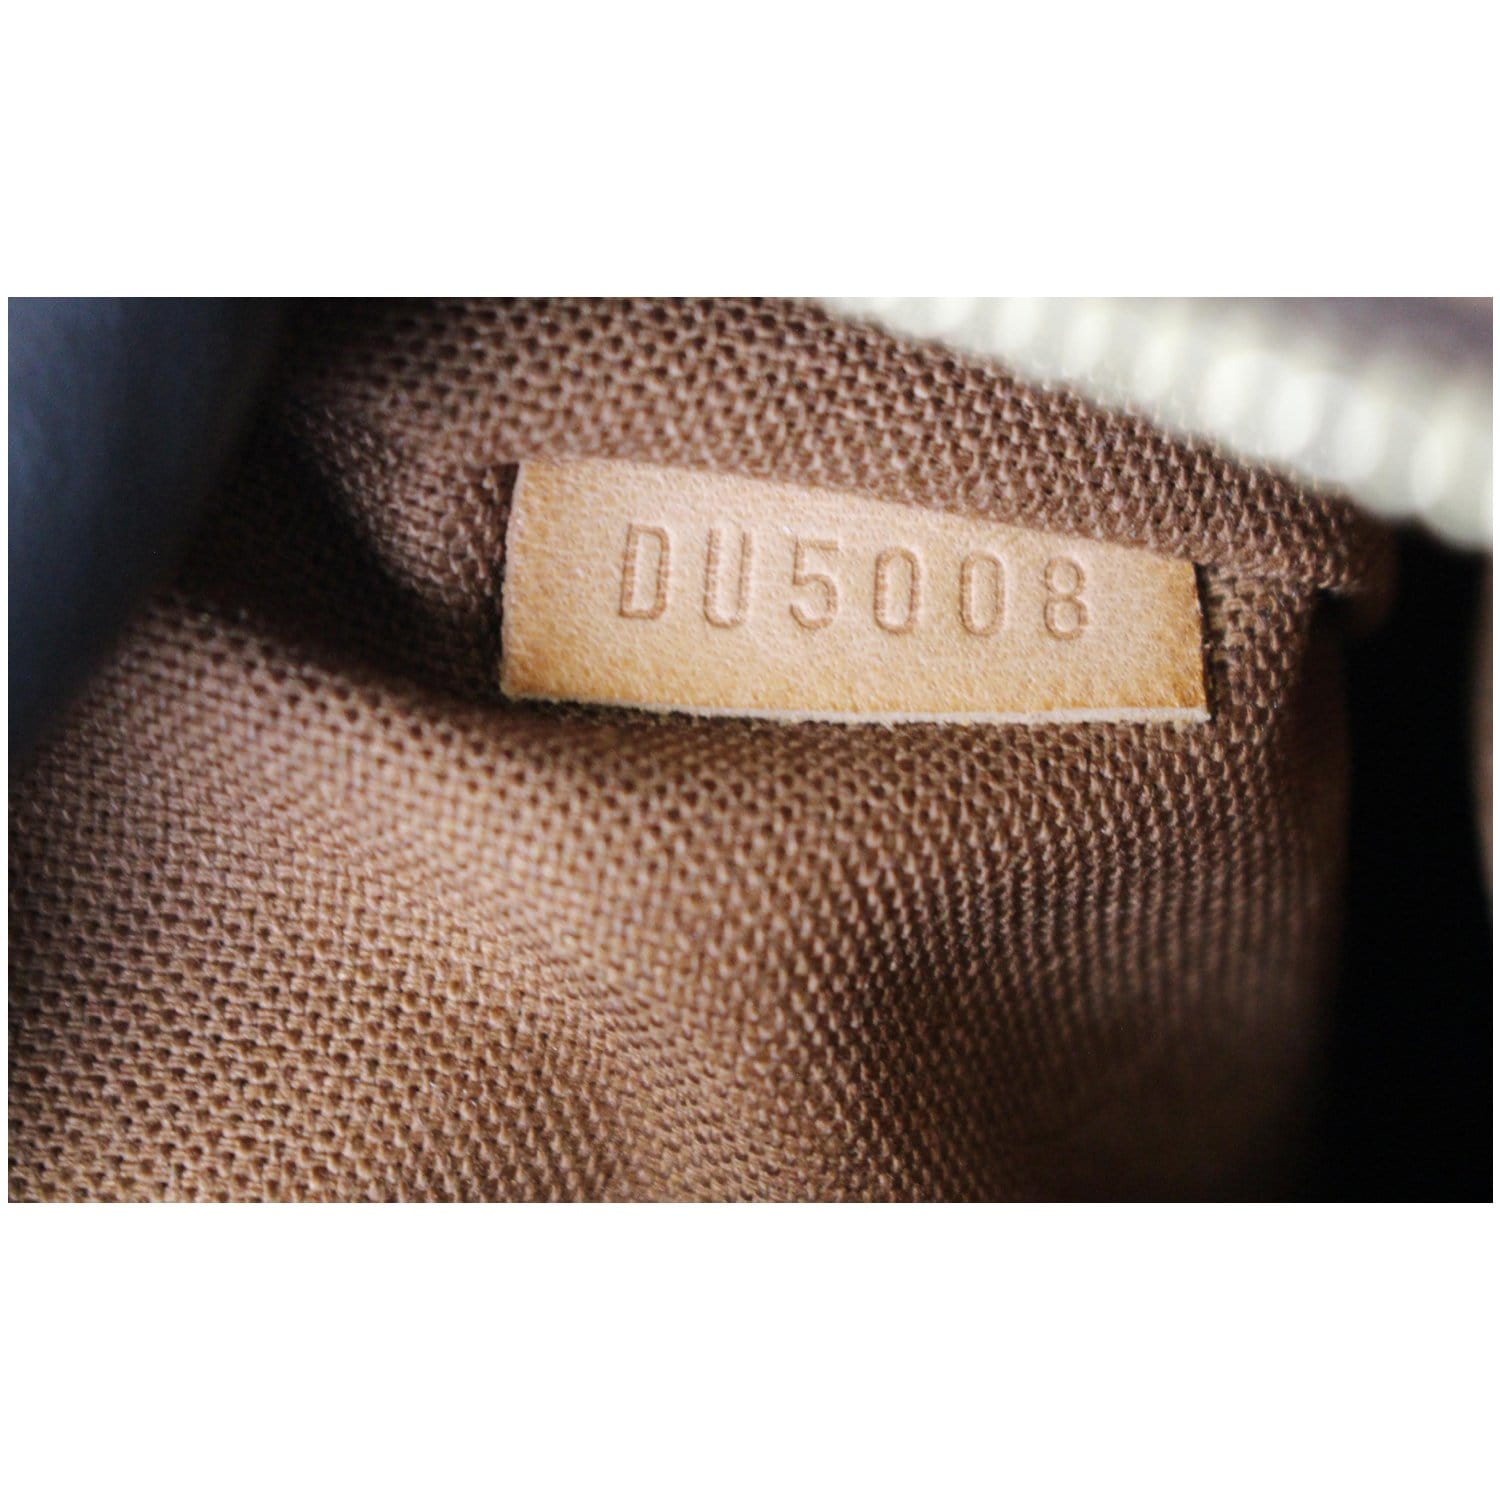 Louis Vuitton, Bags, Authentic Louis Vuitton Damier Cabas Beaubourg  Shoulder Tote Bag N5206 Lv 665f